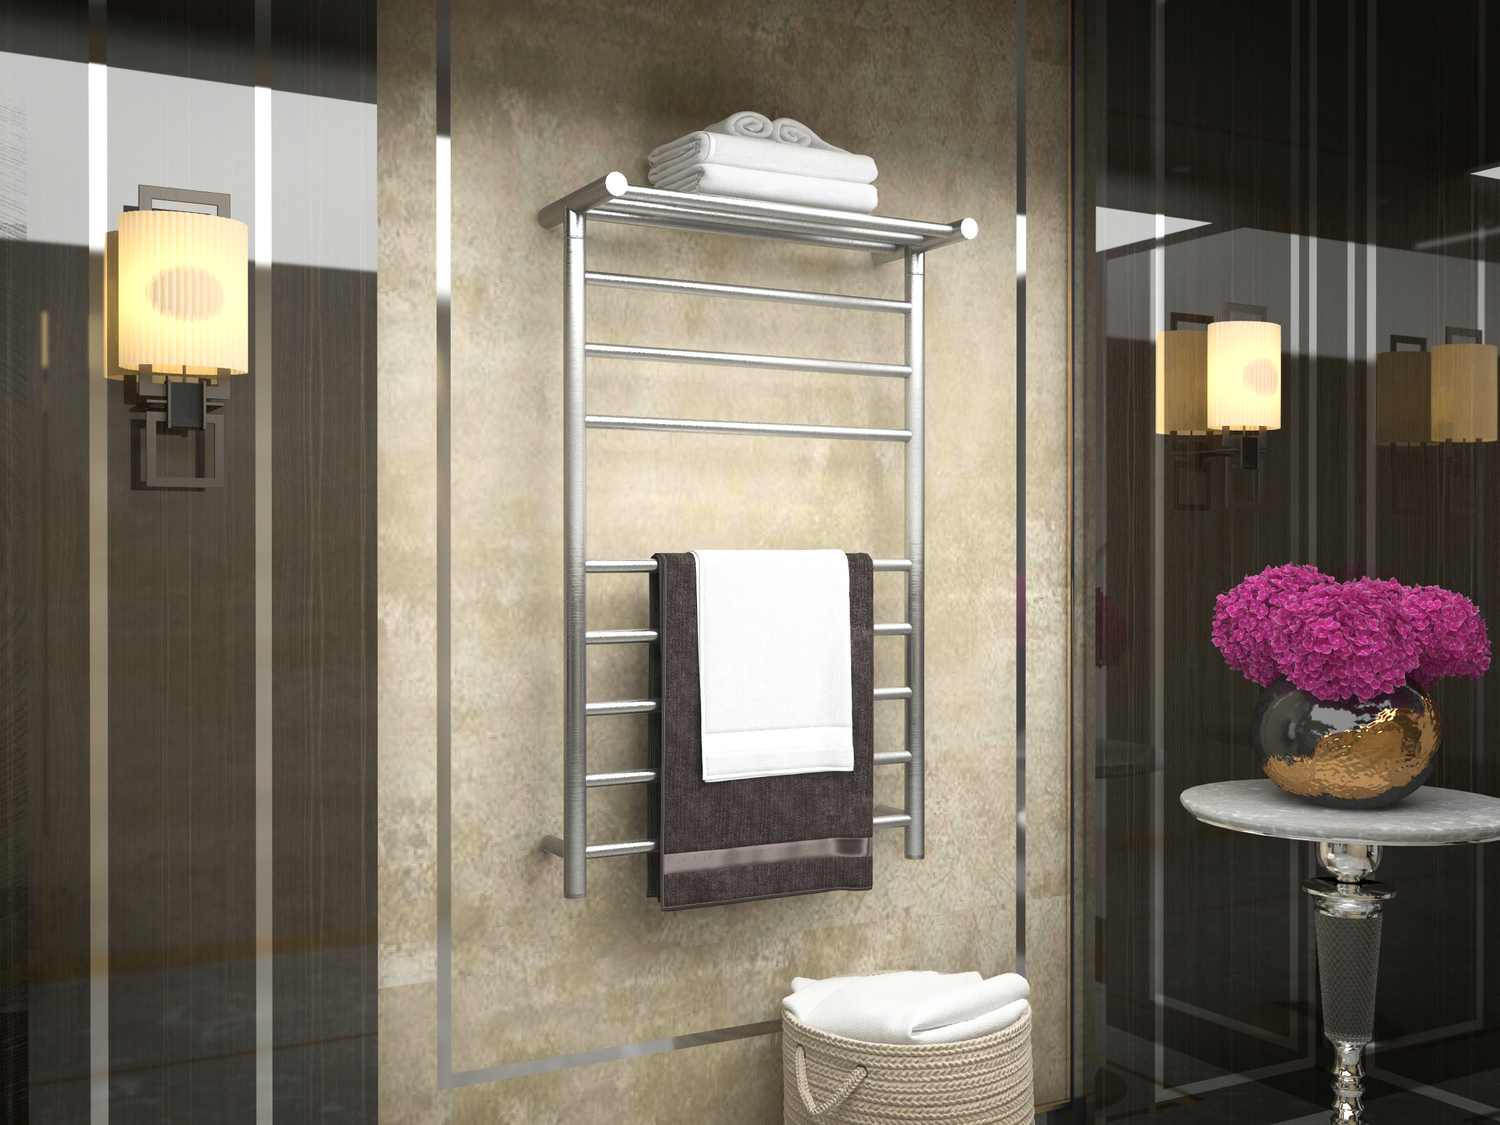 towel warmer hanger Anzzi BATHROOM - Towel Warmers - Wall Mounted Nickel